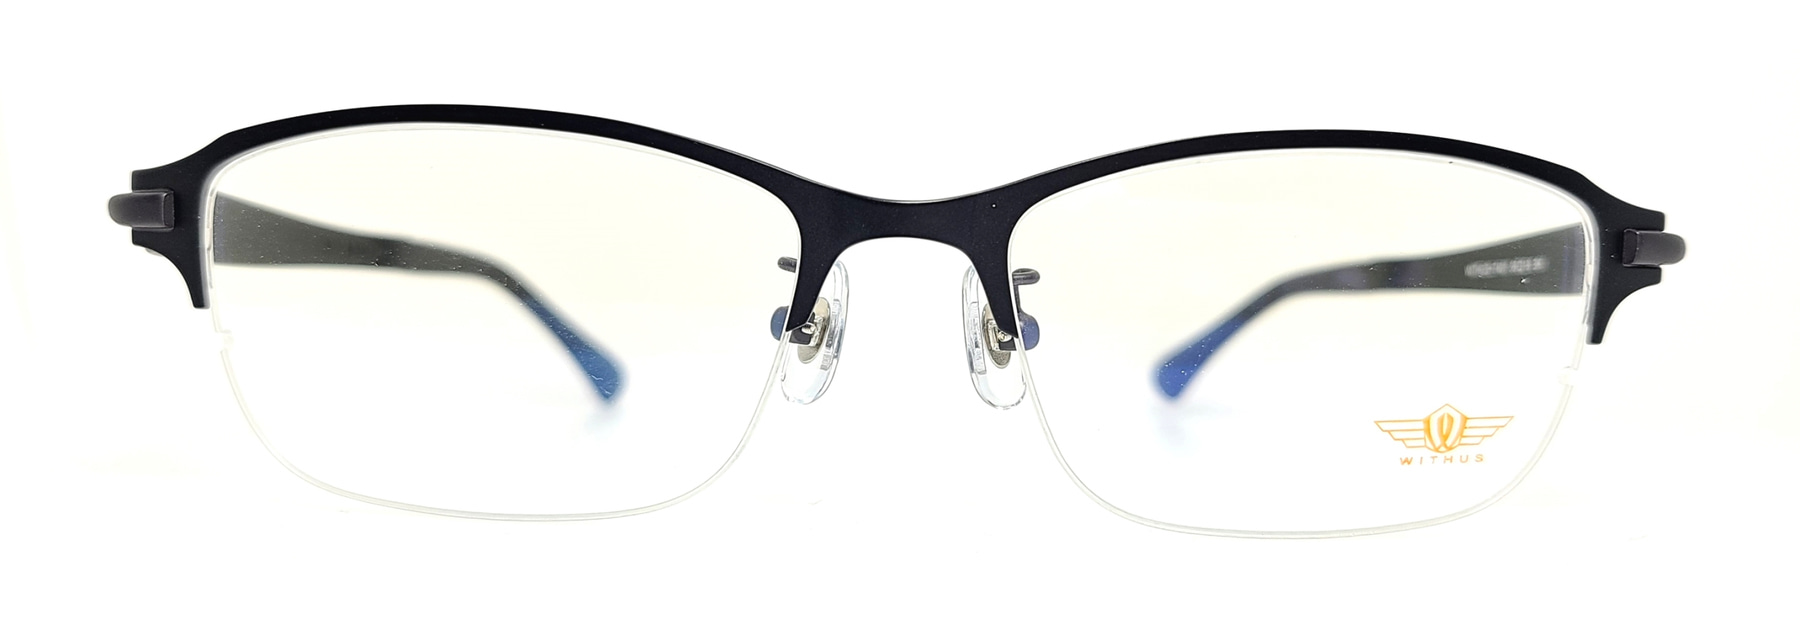 WITHUS-7401, Korean glasses, sunglasses, eyeglasses, glasses